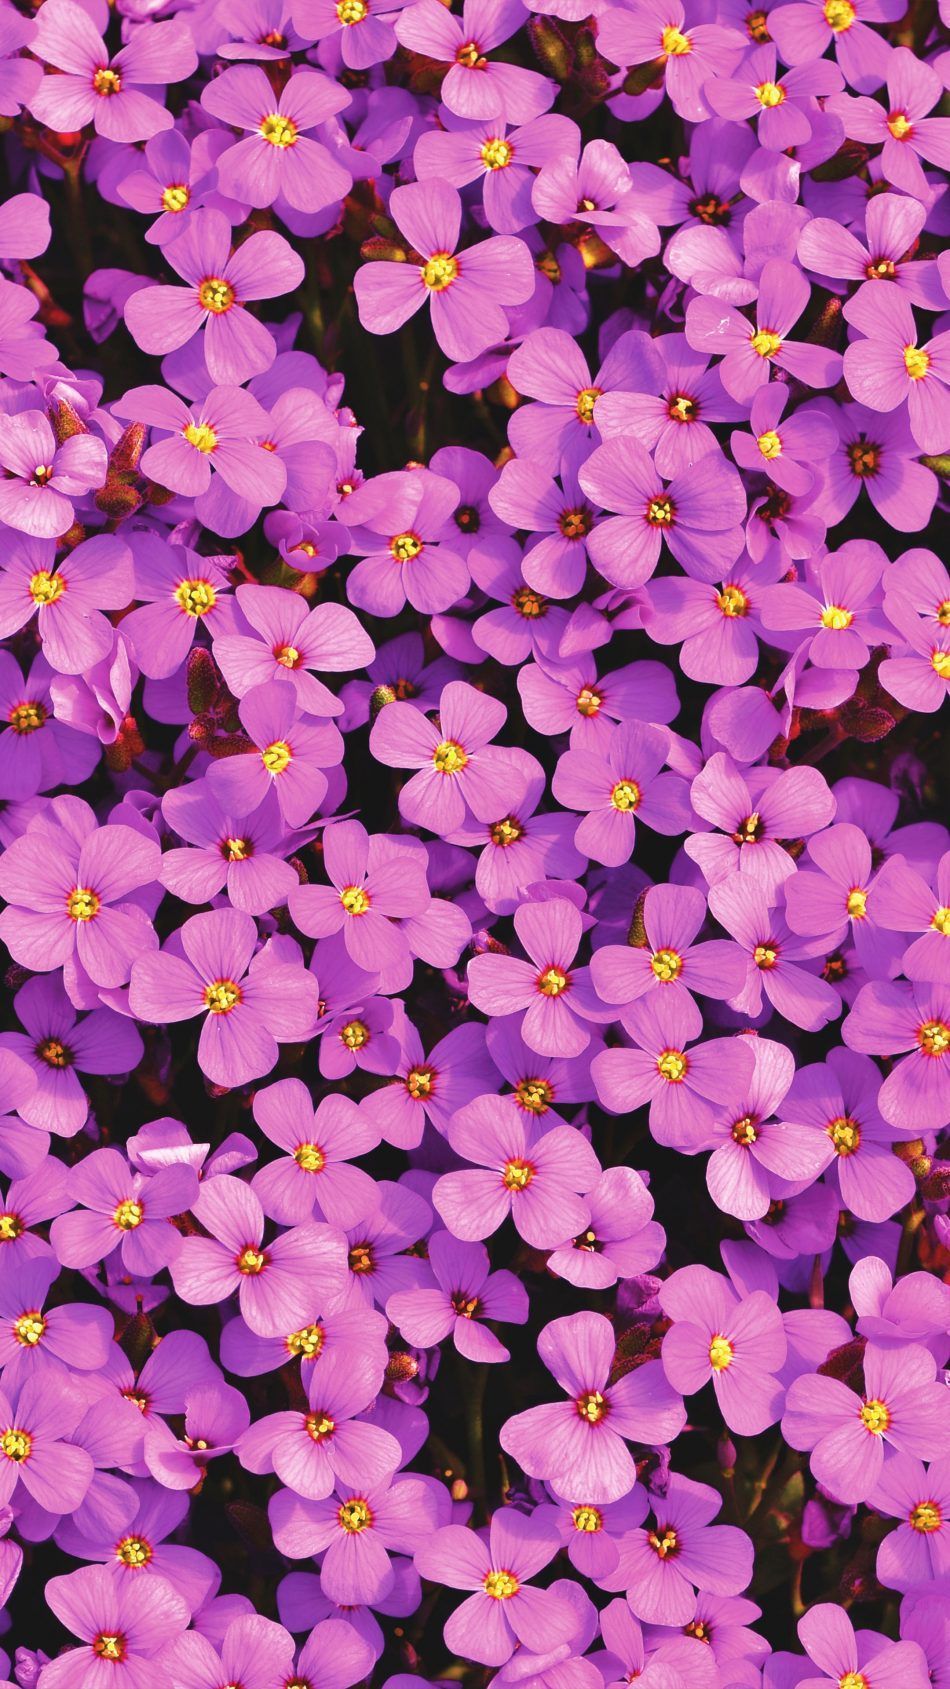 Purple Aubrieta Flowers 4K Ultra HD Mobile Wallpaper. Flower phone wallpaper, Beautiful flowers wallpaper, Purple wallpaper iphone